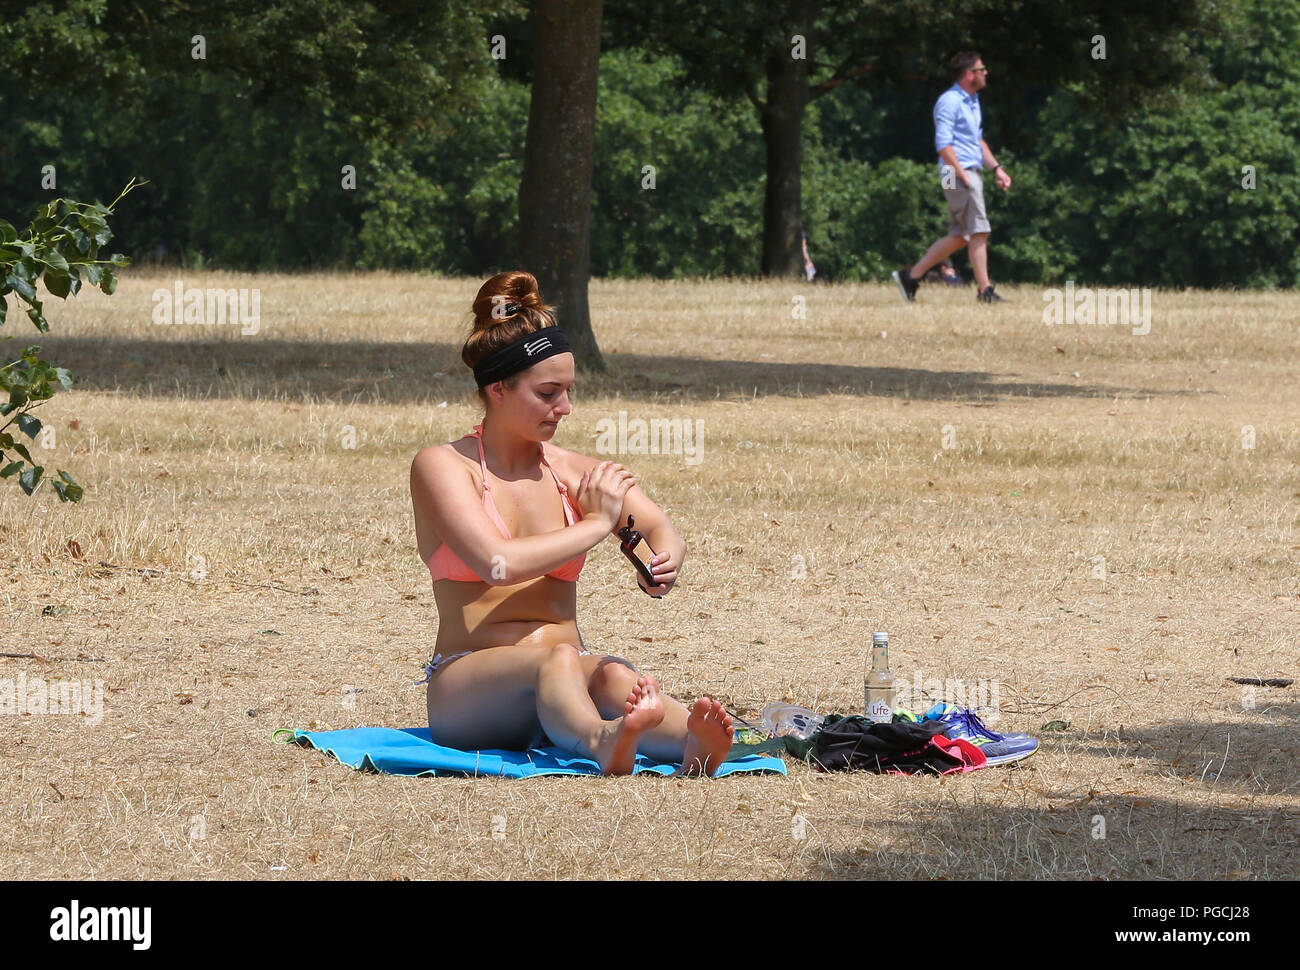 Hawt woman in public park